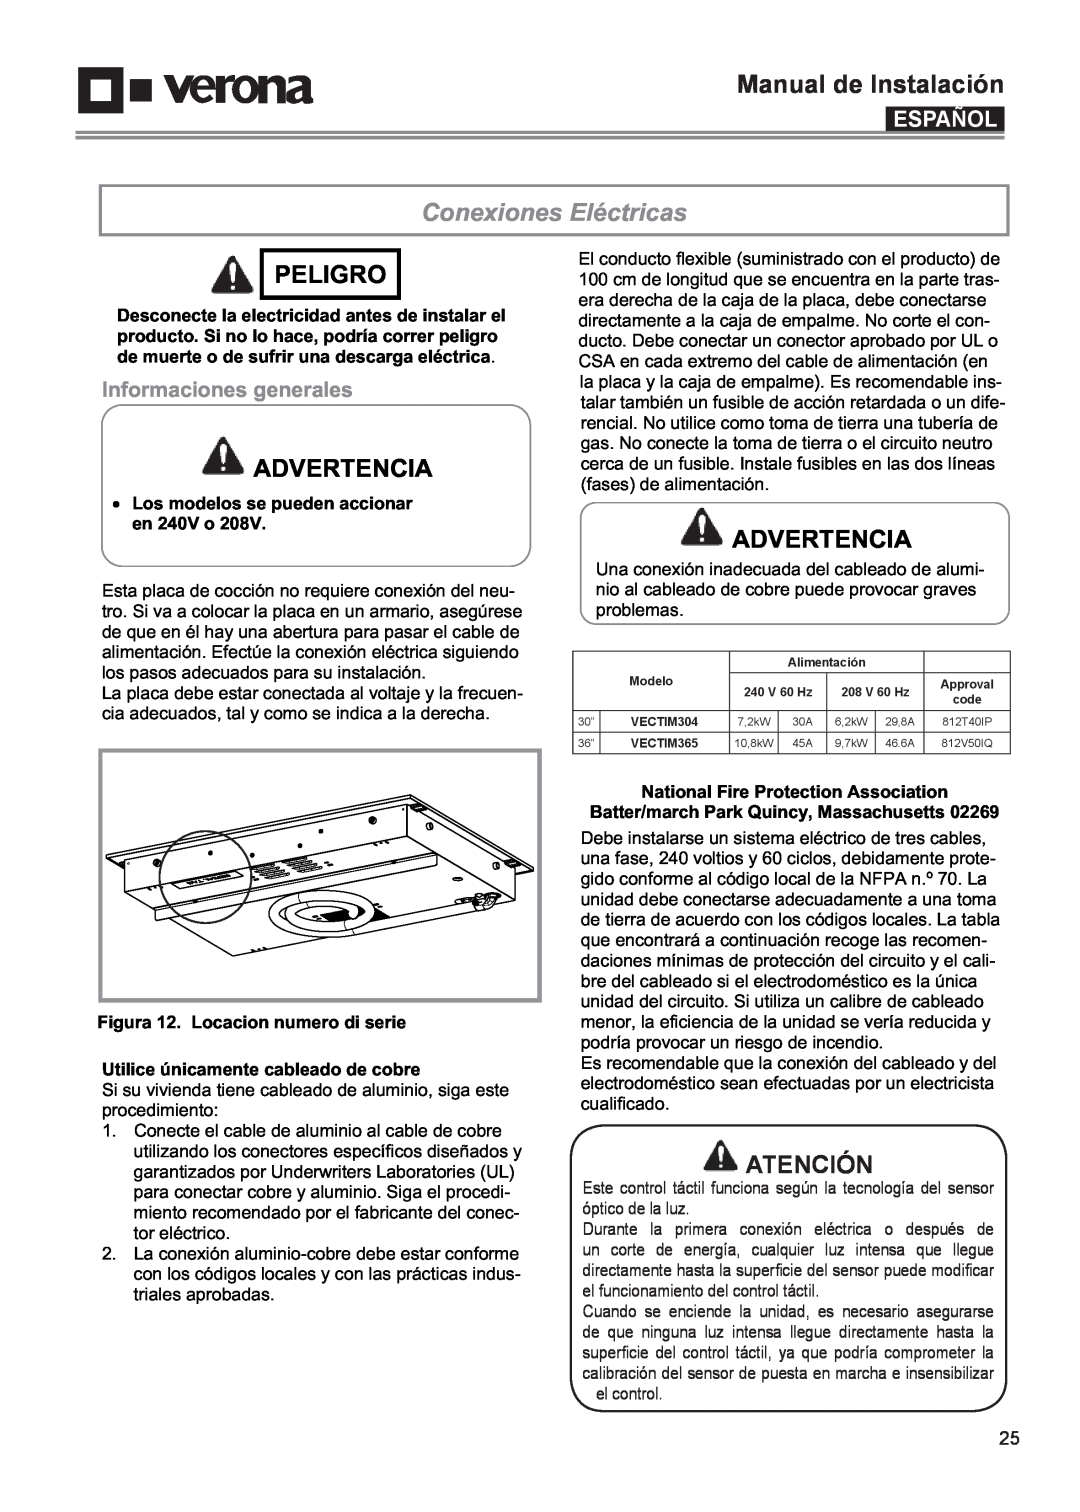 Verona VECTIM365 Conexiones Eléctricas, Atención, Informaciones generales, Manual de Instalación, Peligro, Advertencia 